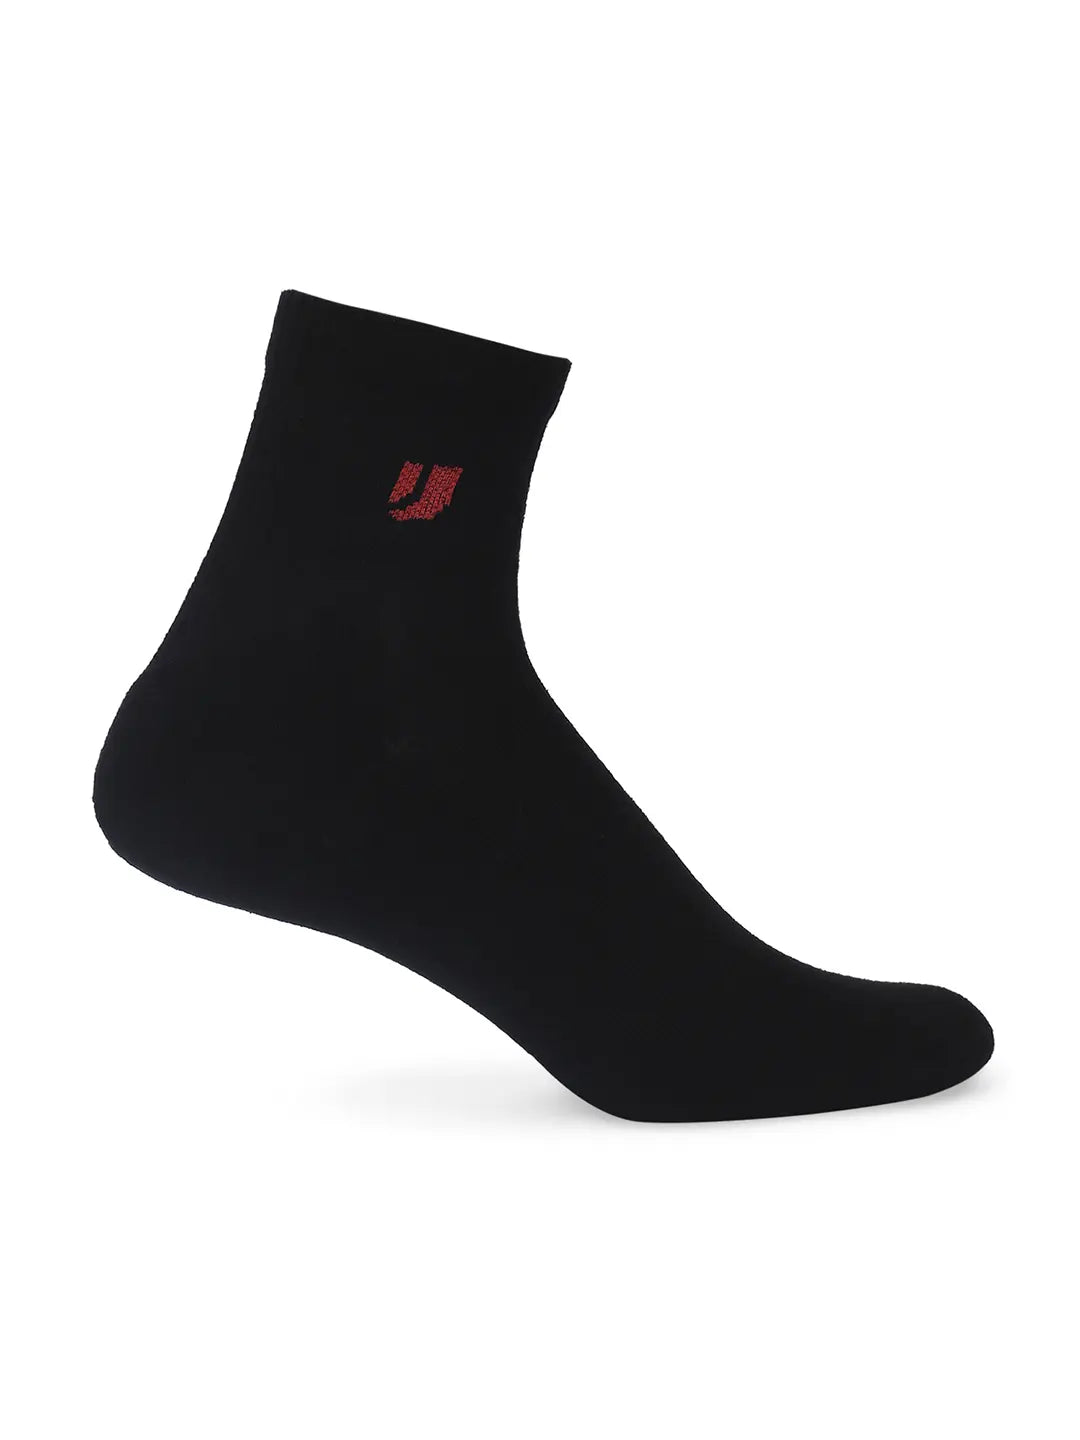 Men Grey Melange & Black Cotton Blend Ankle Length Socks - Pack Of 2 - Underjeans by Spykar